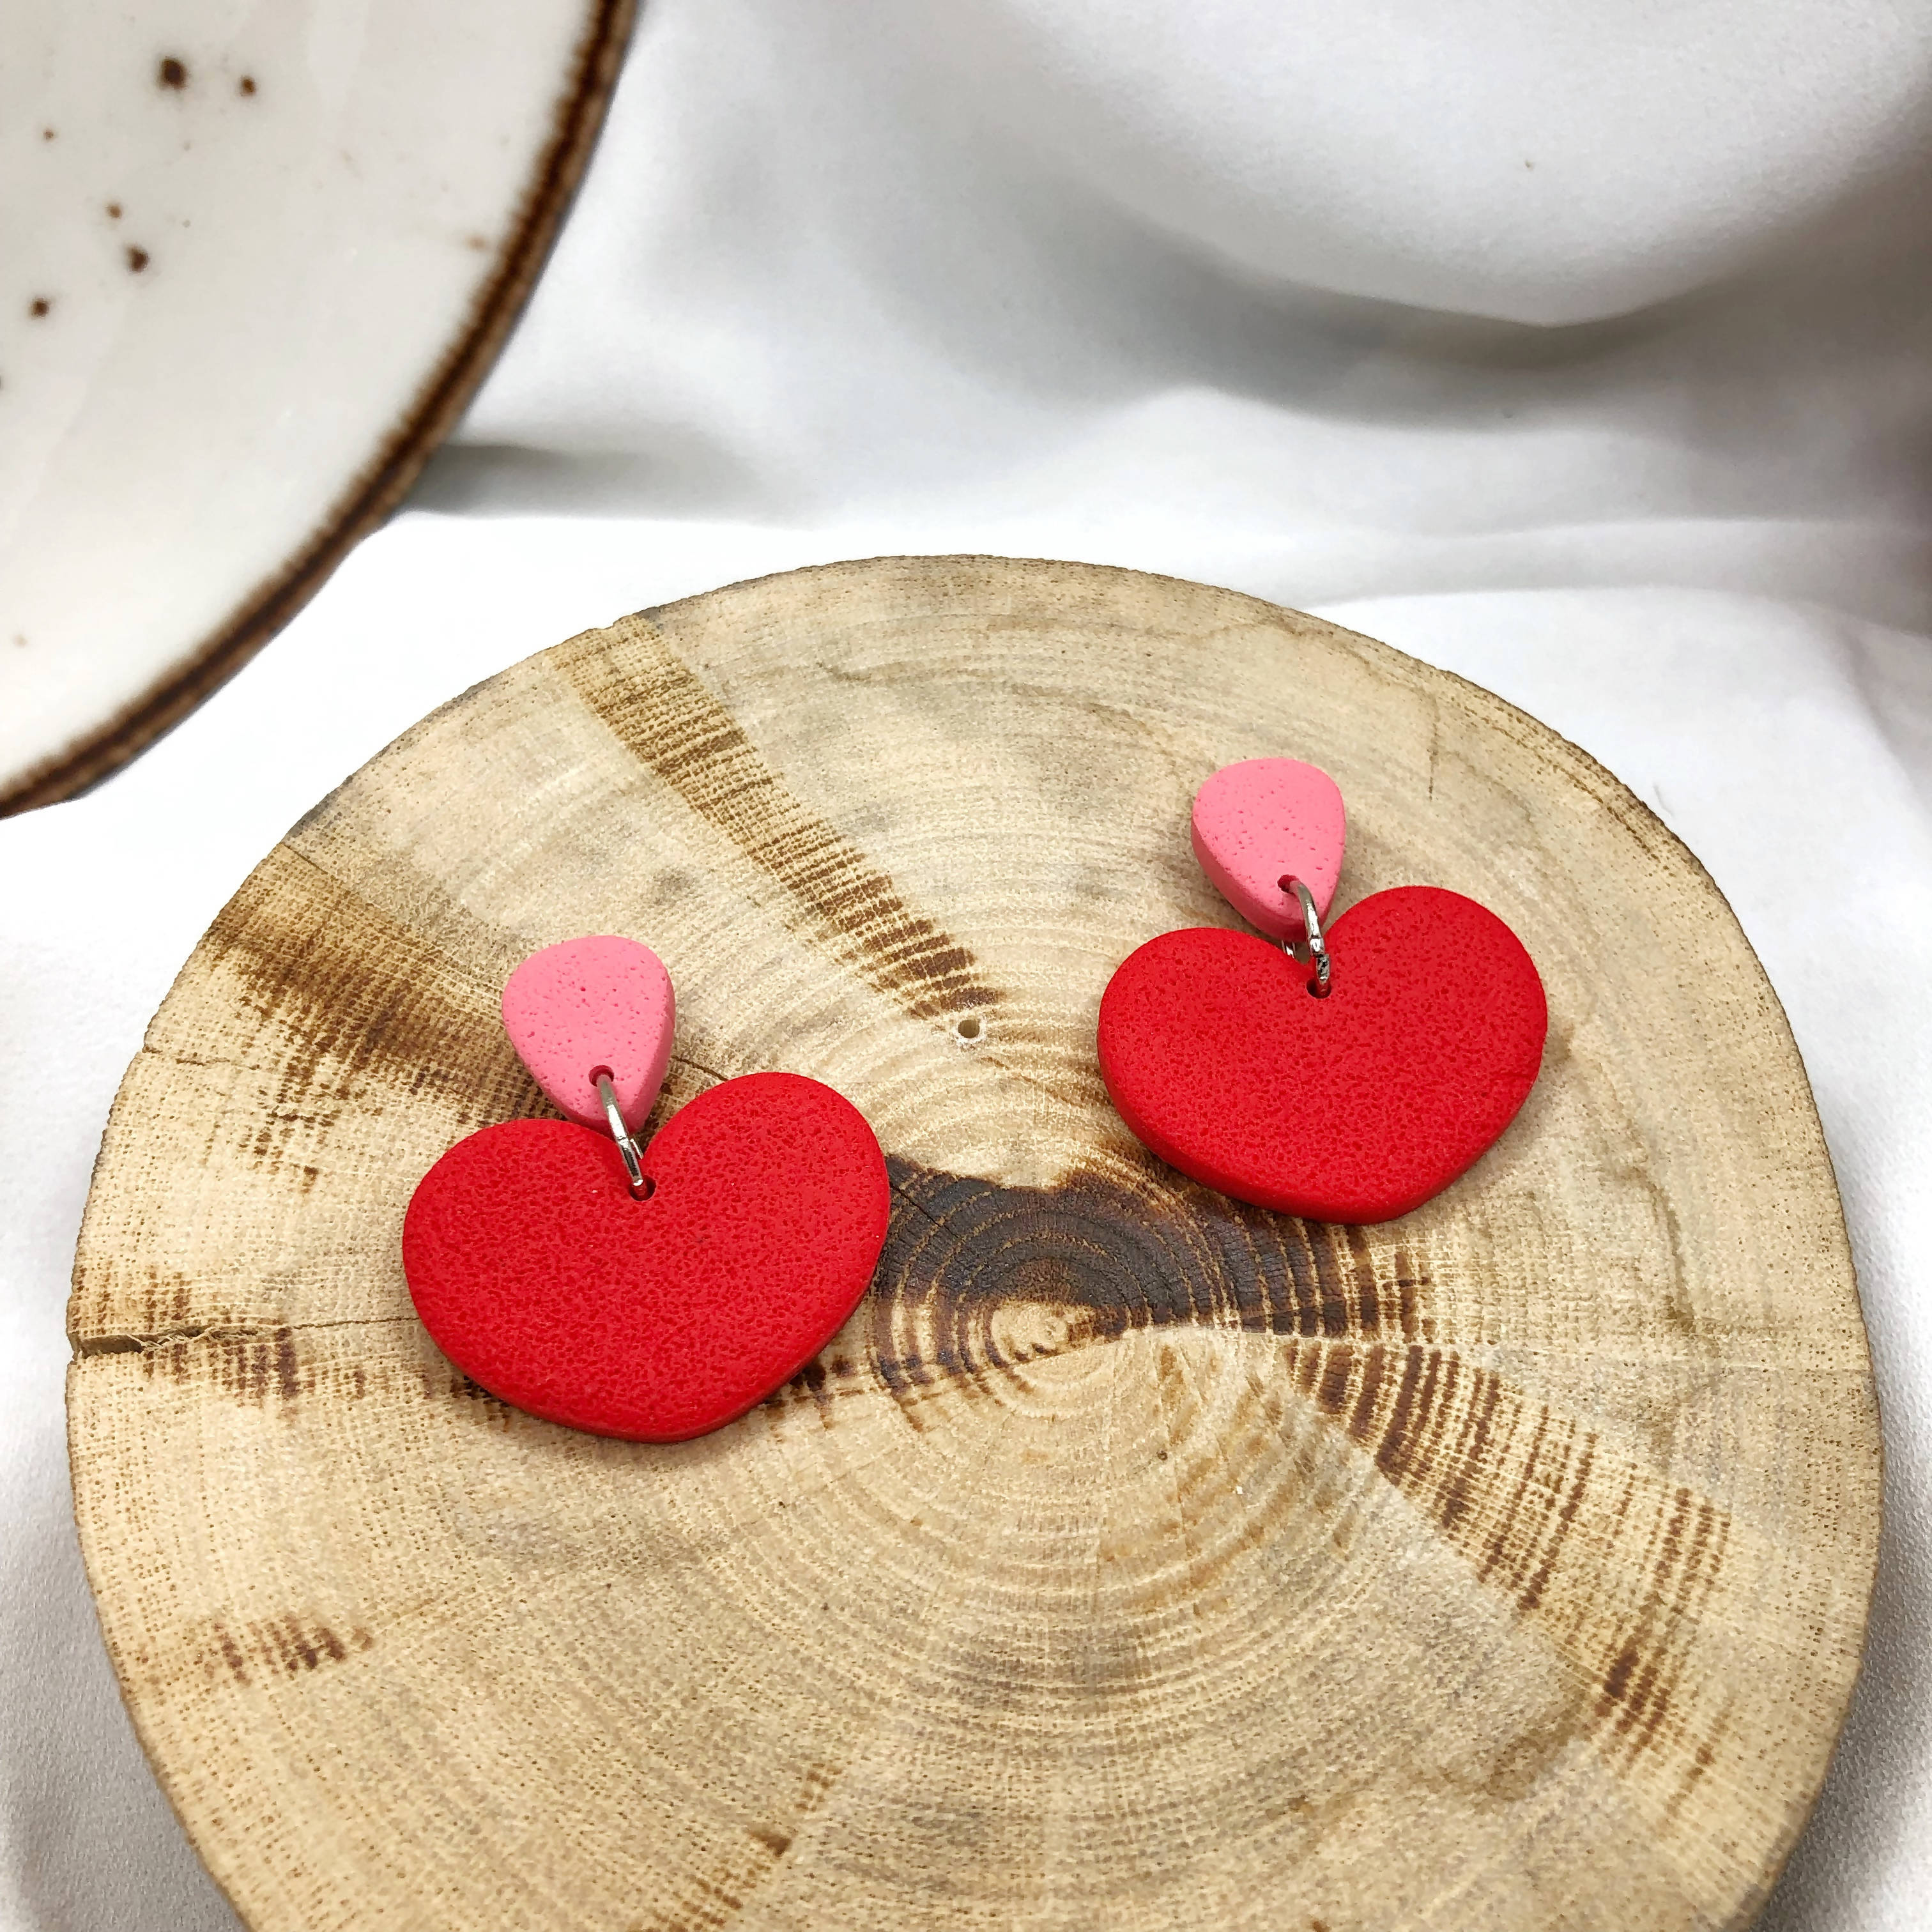 Hearts Shape Girl's Earrings - Handmade Polymer Clay Earrings - Wear Sierra